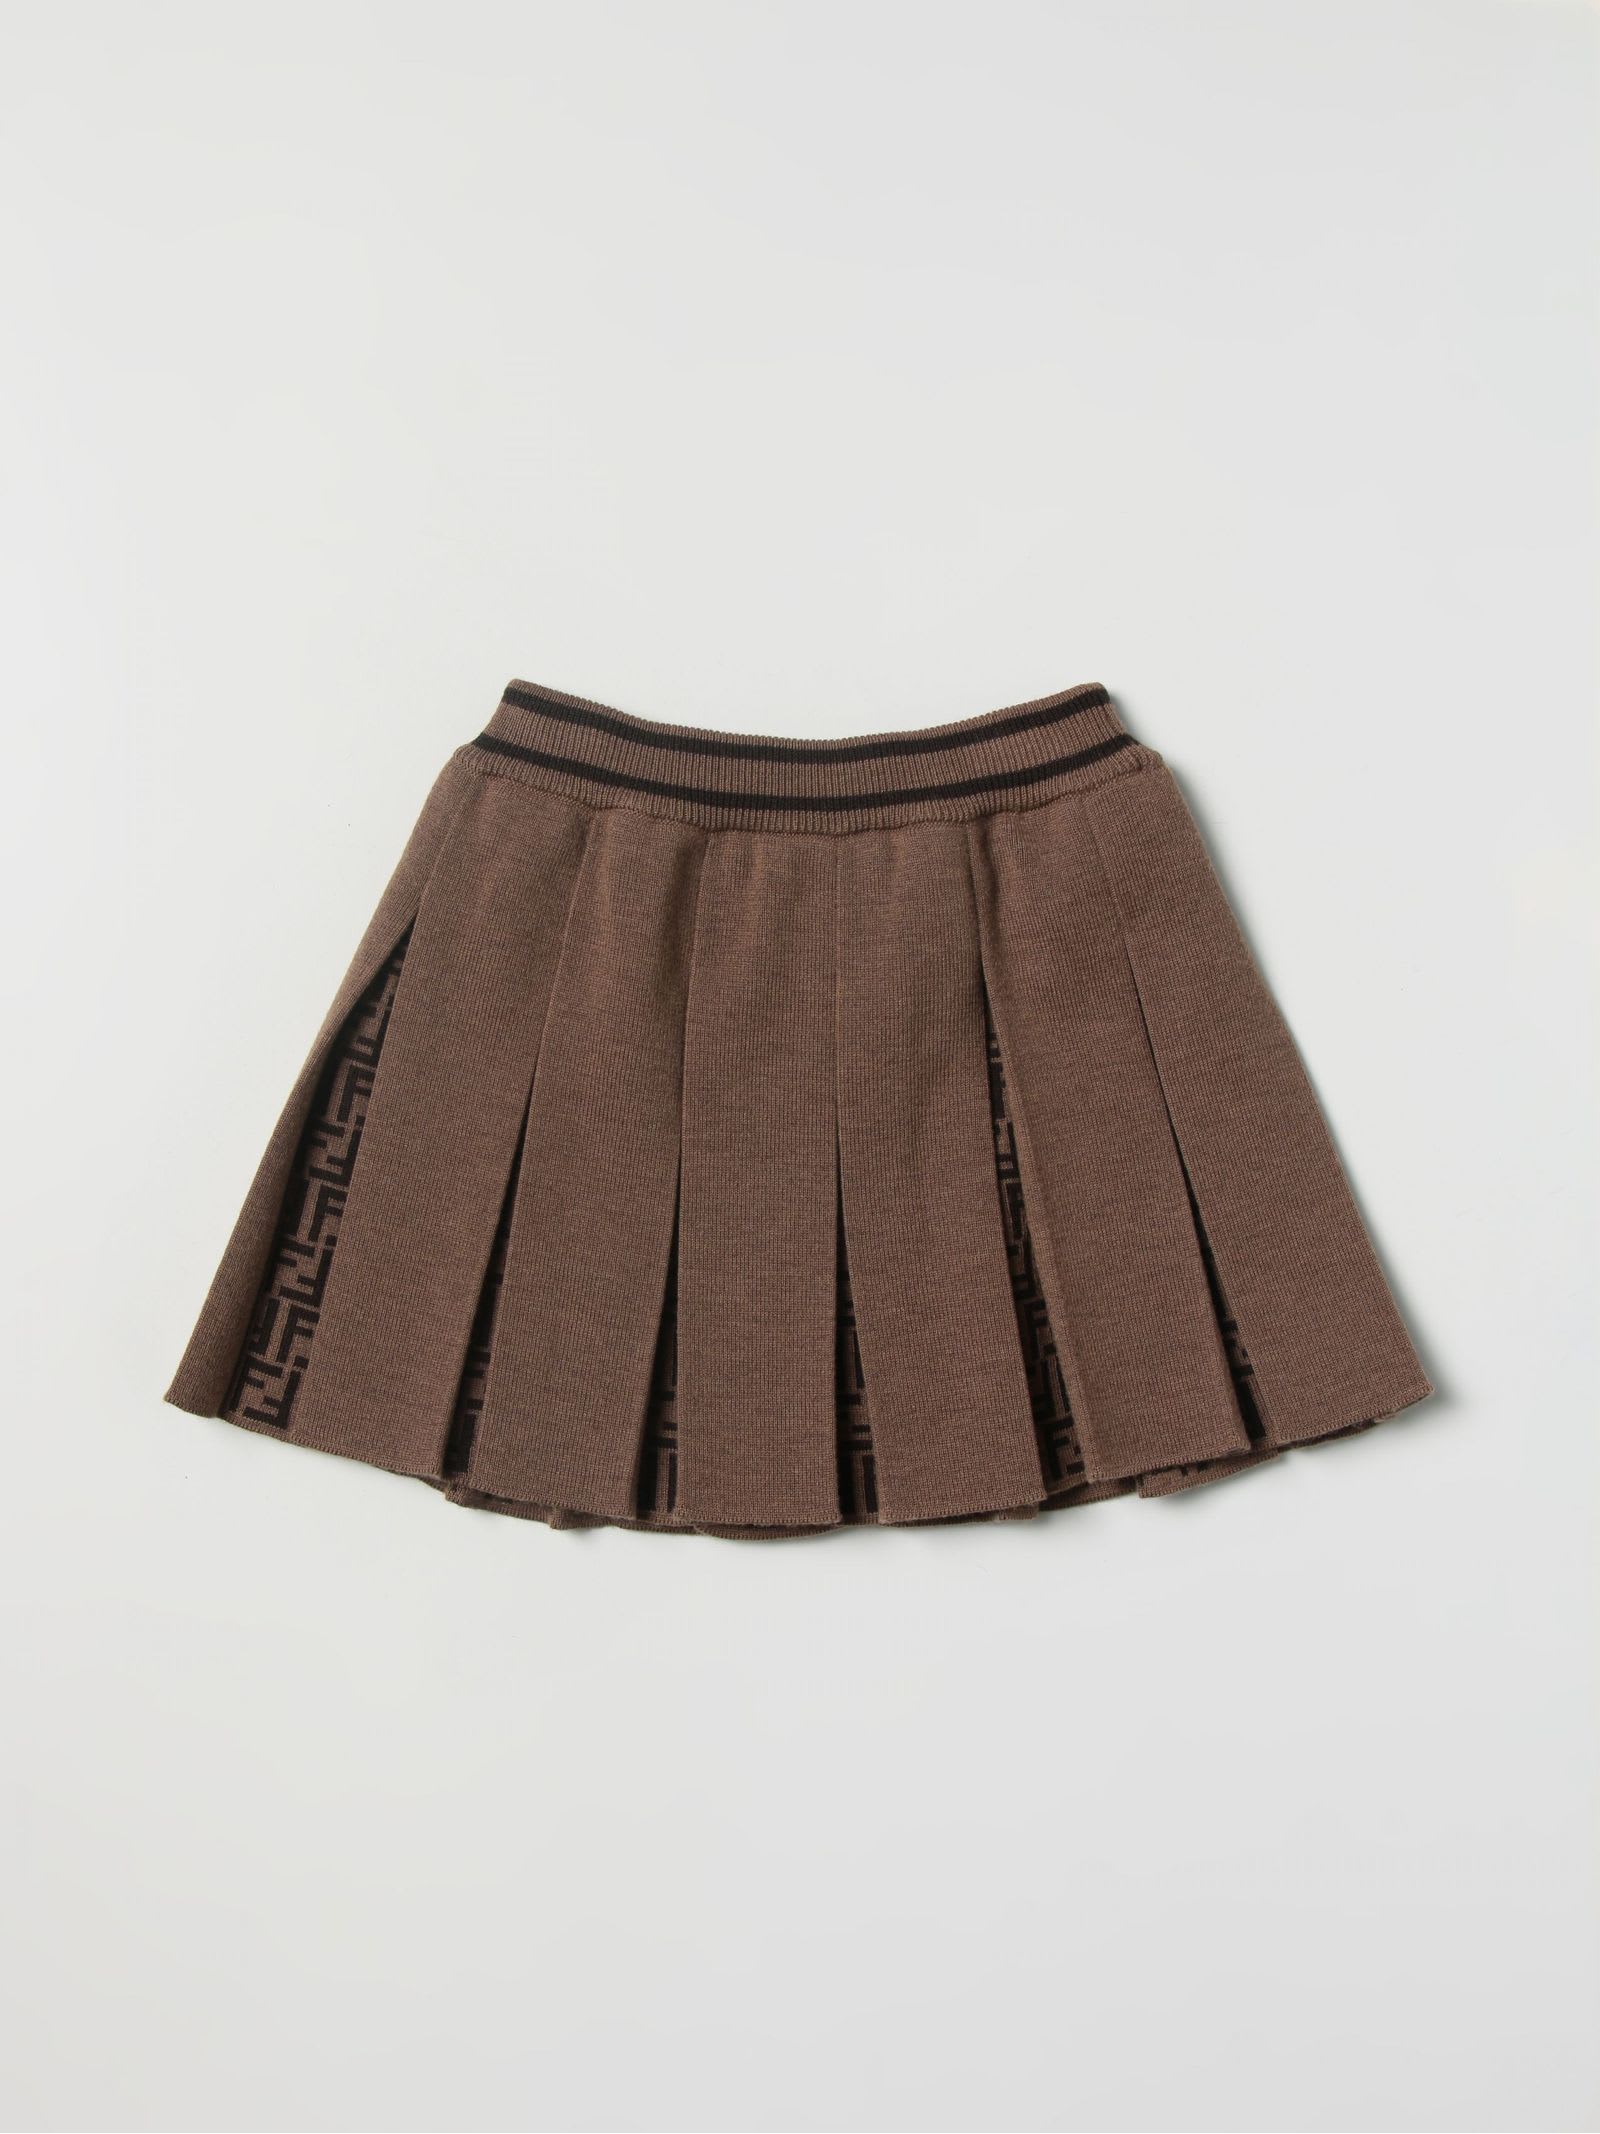 Fendi Brown Virgin Wool Skirt